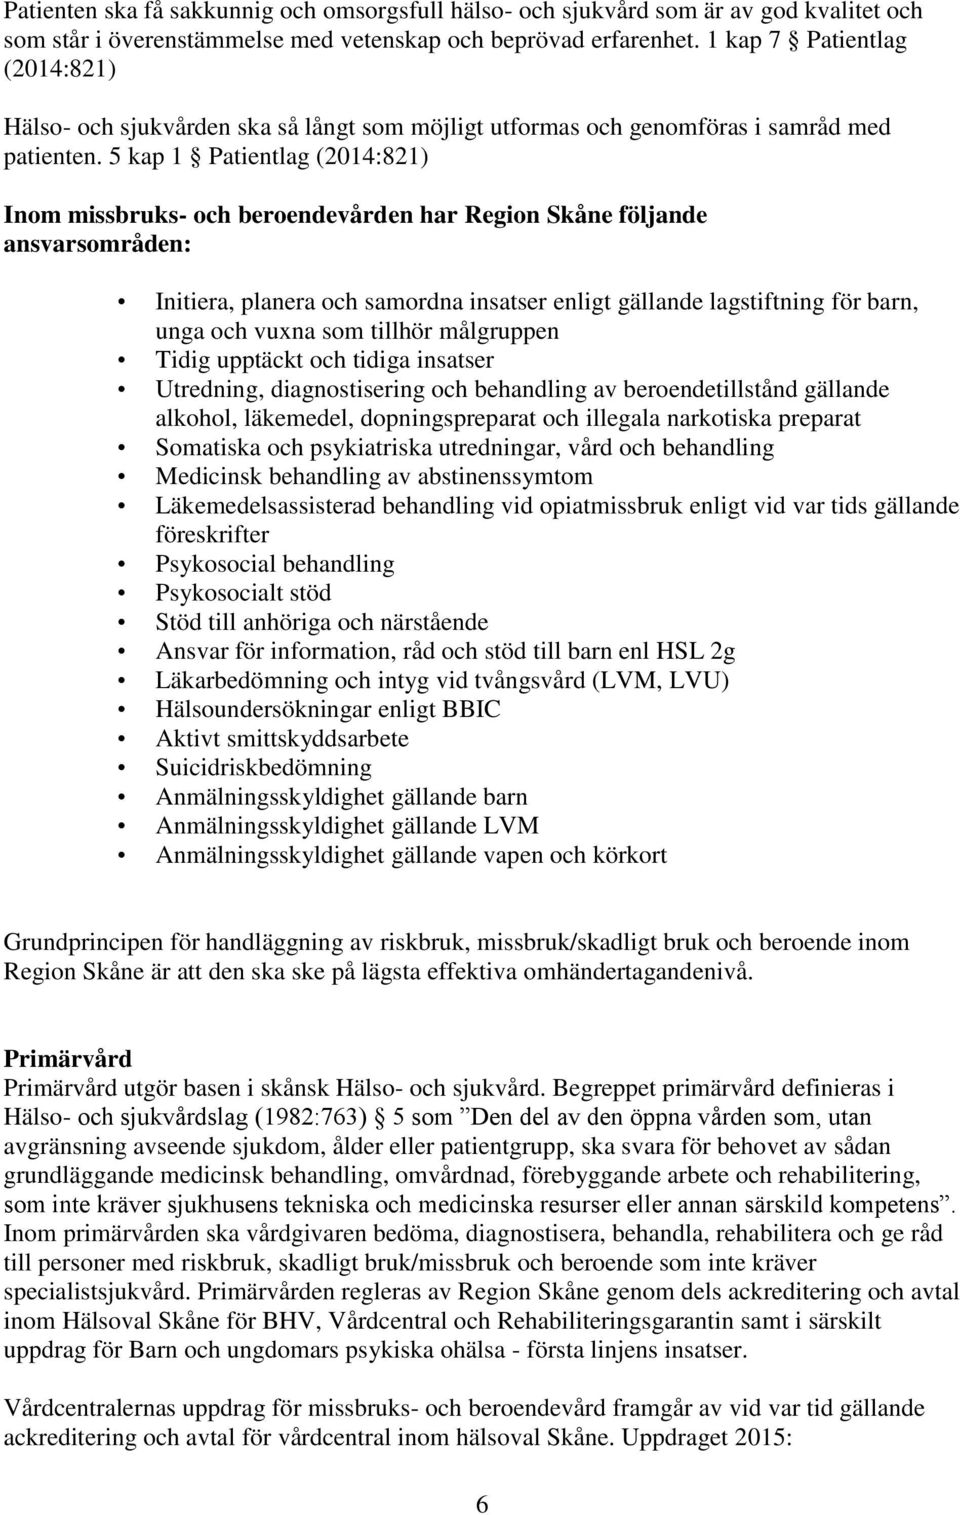 5 kap 1 Patientlag (2014:821) Inom missbruks- och beroendevården har Region Skåne följande ansvarsområden: Initiera, planera och samordna insatser enligt gällande lagstiftning för barn, unga och